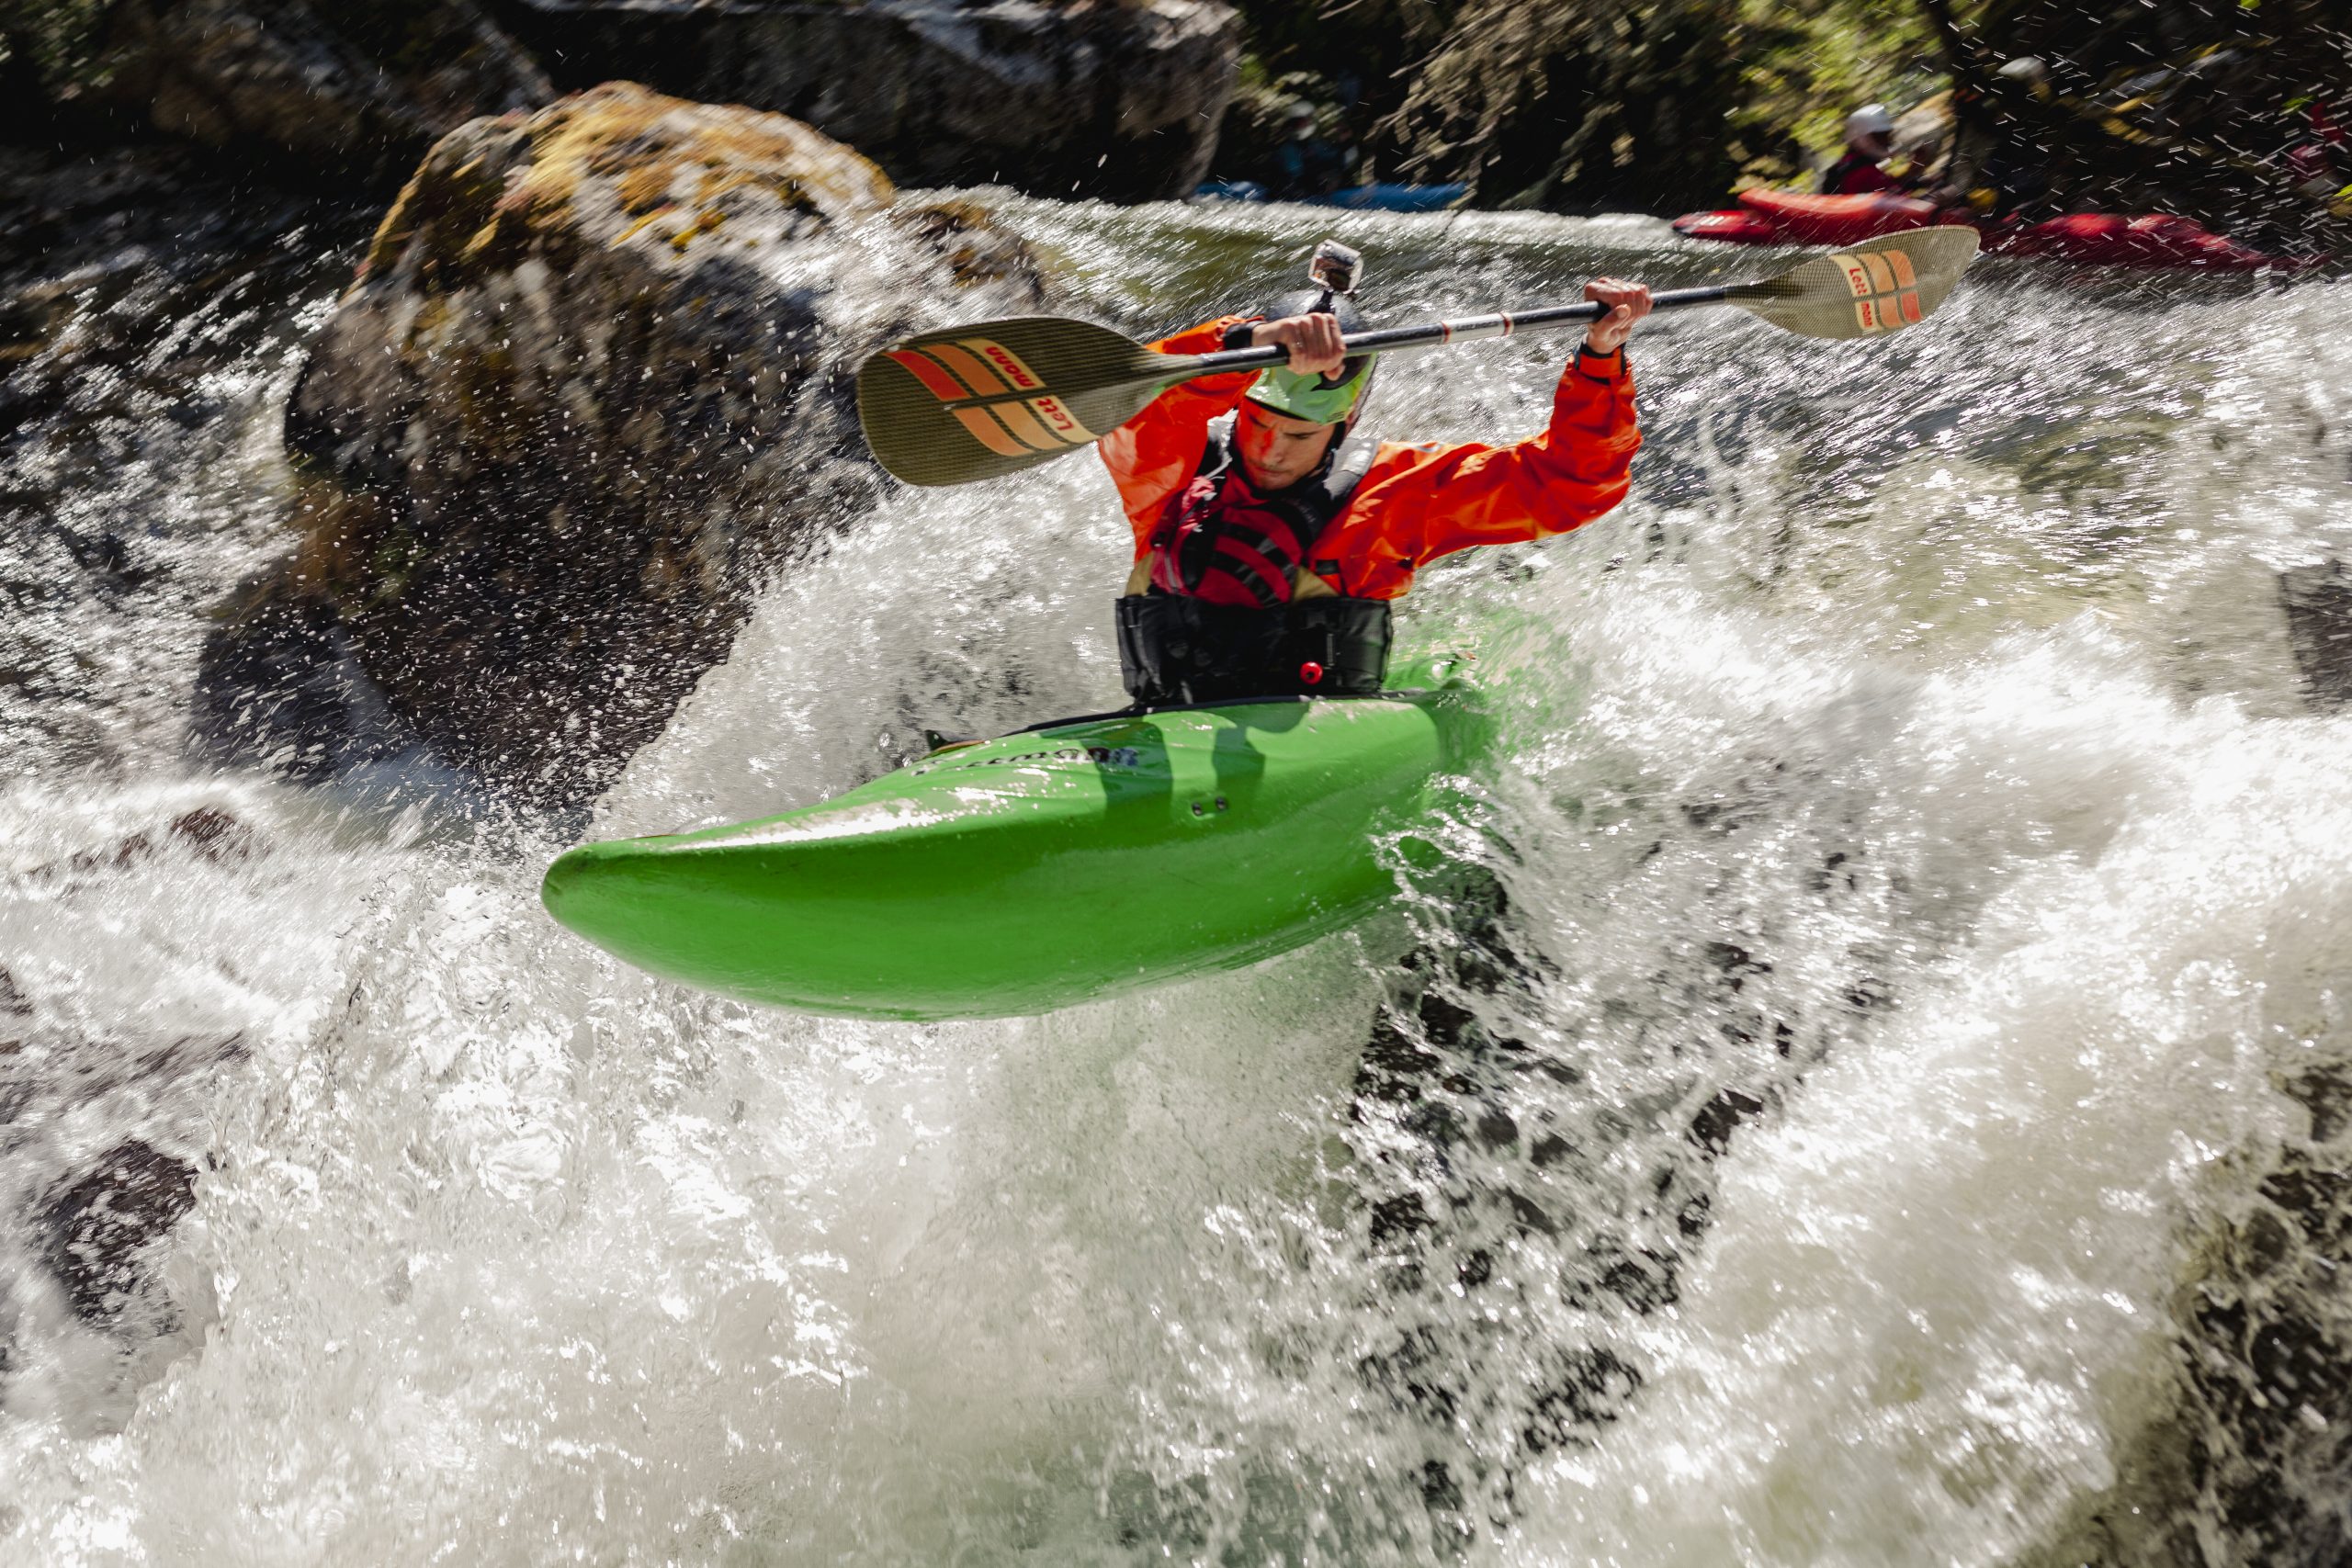 La Rampa. Río Piqueras. Descenso en piragua. XX competición de Kayak extremo. 24 de julio de 2022.
© Juan San Sebastián. Todos los derechos reservados.